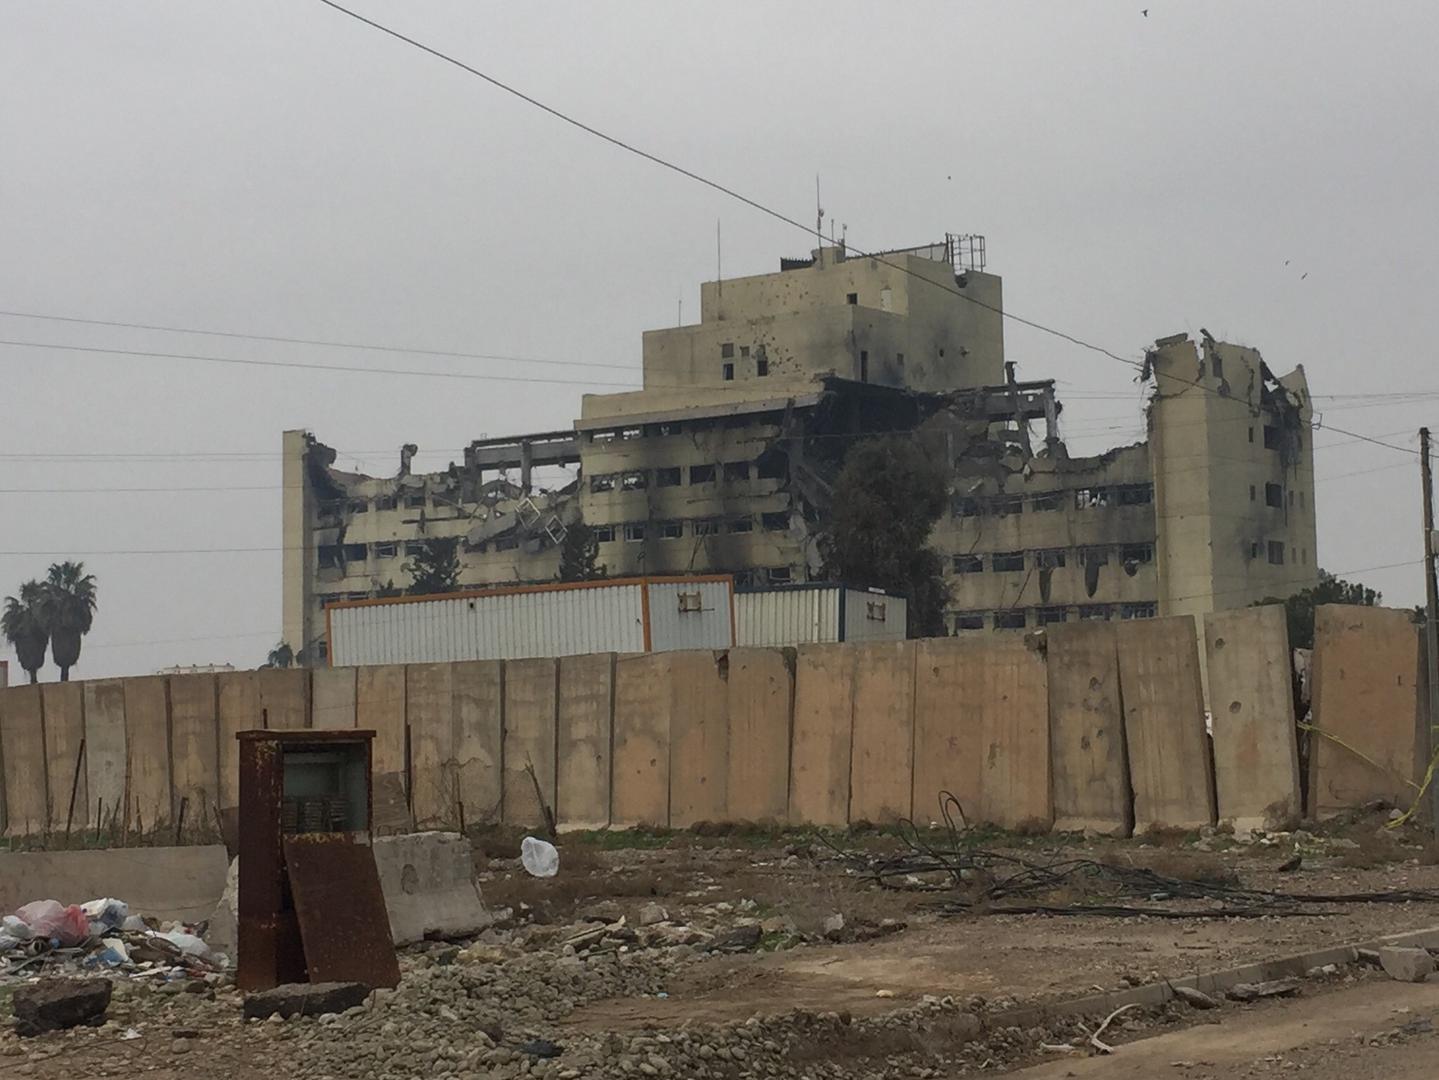 لأكثر من عامين، سيطر داعش على مستشفى السلام شرق الموصل، ووضع حوالي 10 مقاتلين داخله بشكل دائم